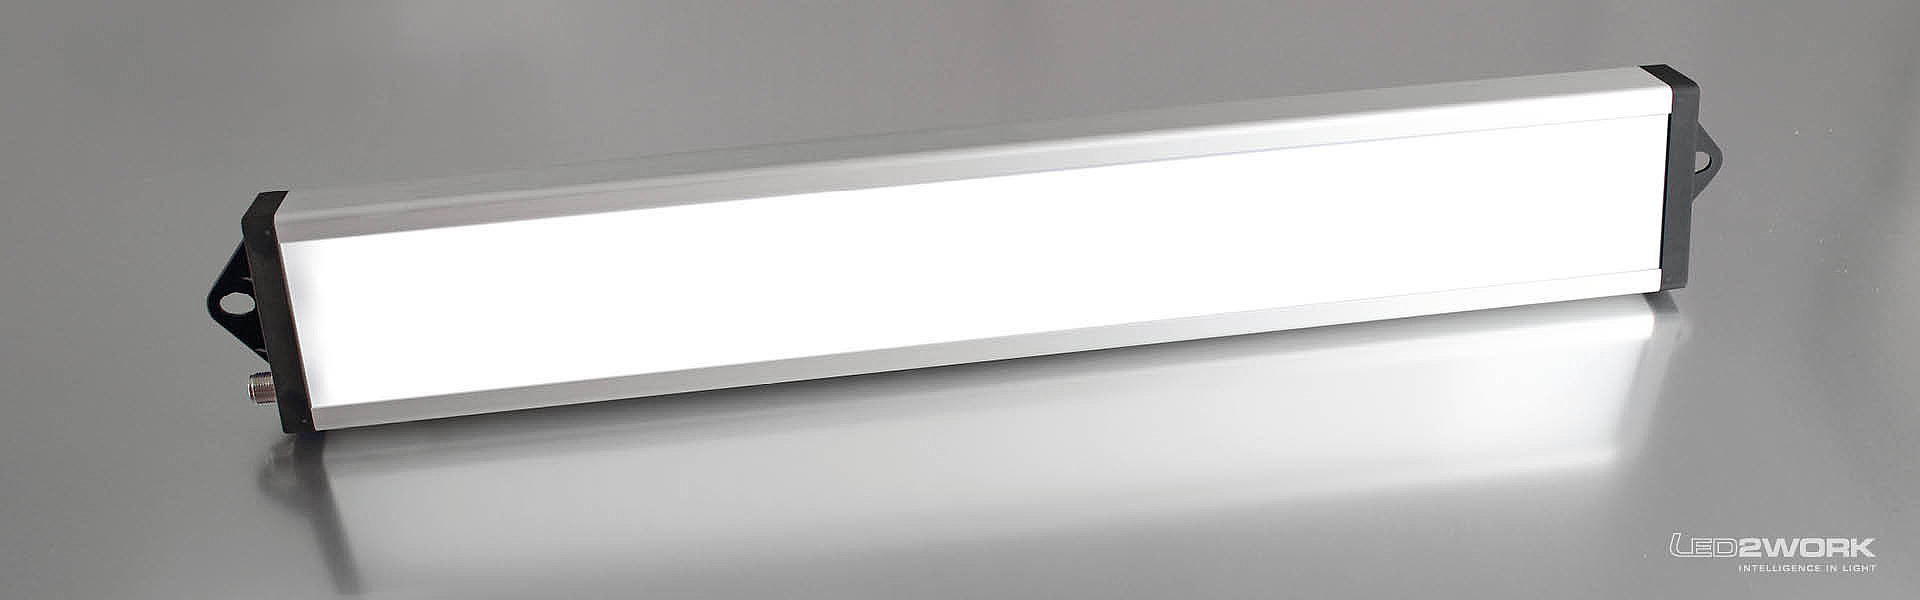 Ilustración de la luminaria LED de trabajo | luminaria LED de sistema | luminaria LED de señalización UNILED SL RGB-W de LED2WORK